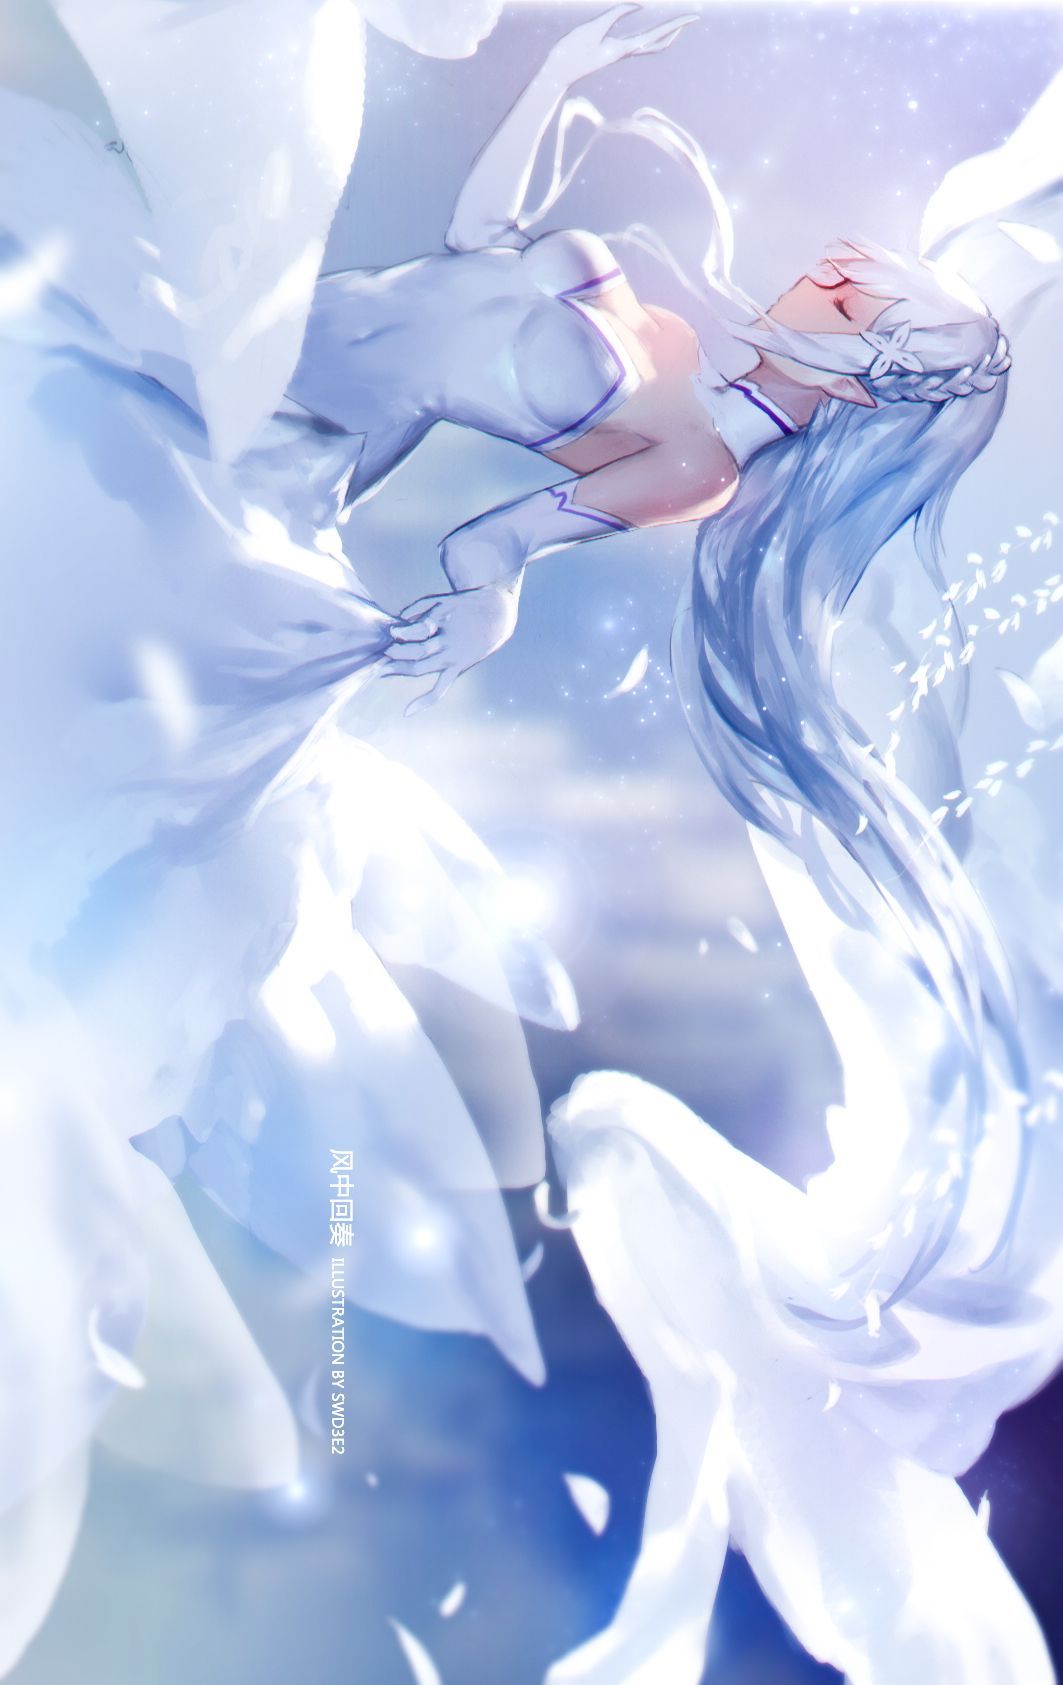 Emilia: Zero #fanart #manga #anime #animegirl #GG\^^/. Anime